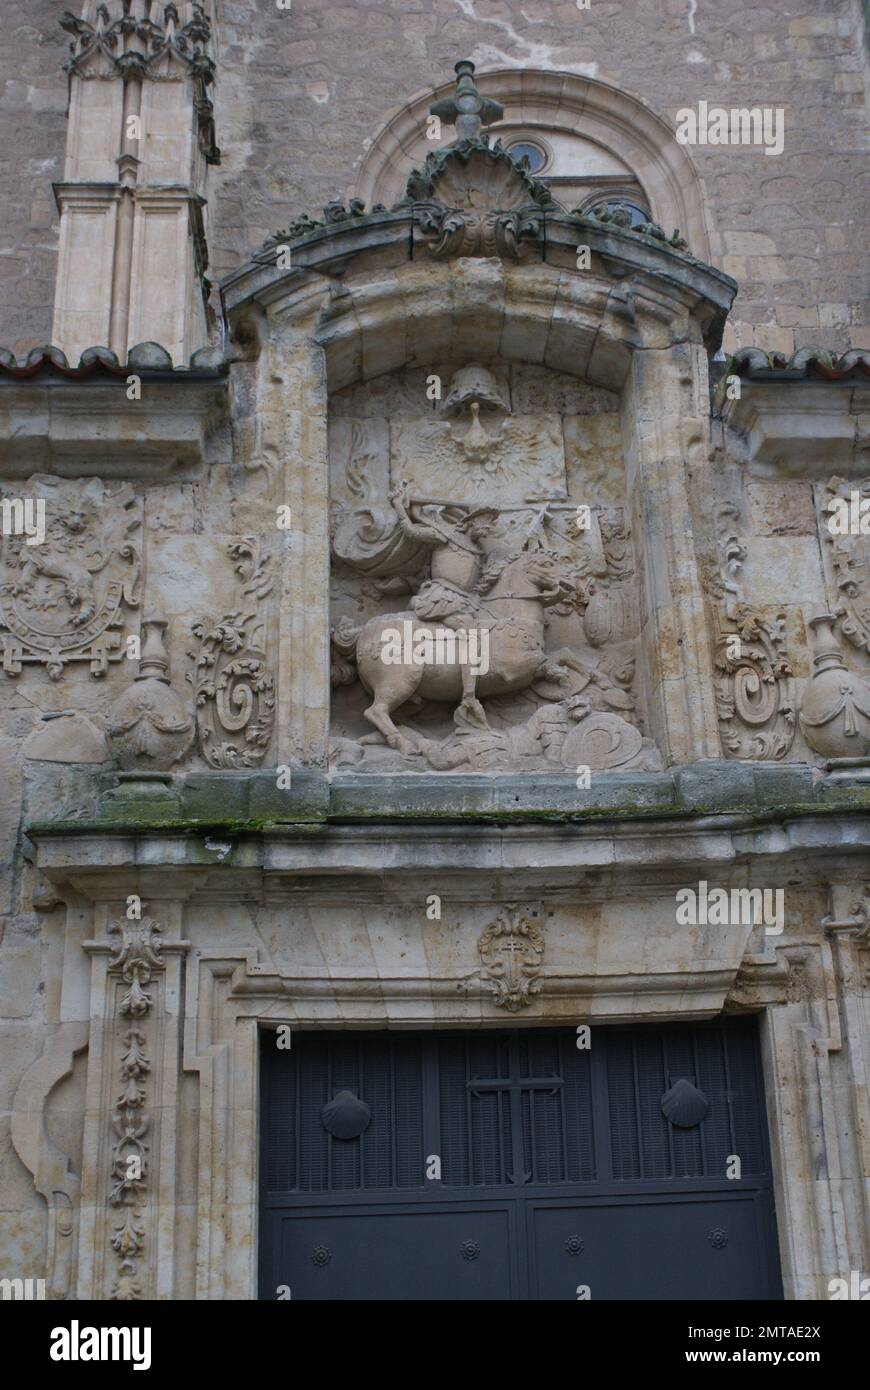 La Iglesia de Sancti Spiritus de Salamanca, es un templo católico perteneciente al estilo del gótico tardío, y es el único resto que sobrevive en la a Stock Photo